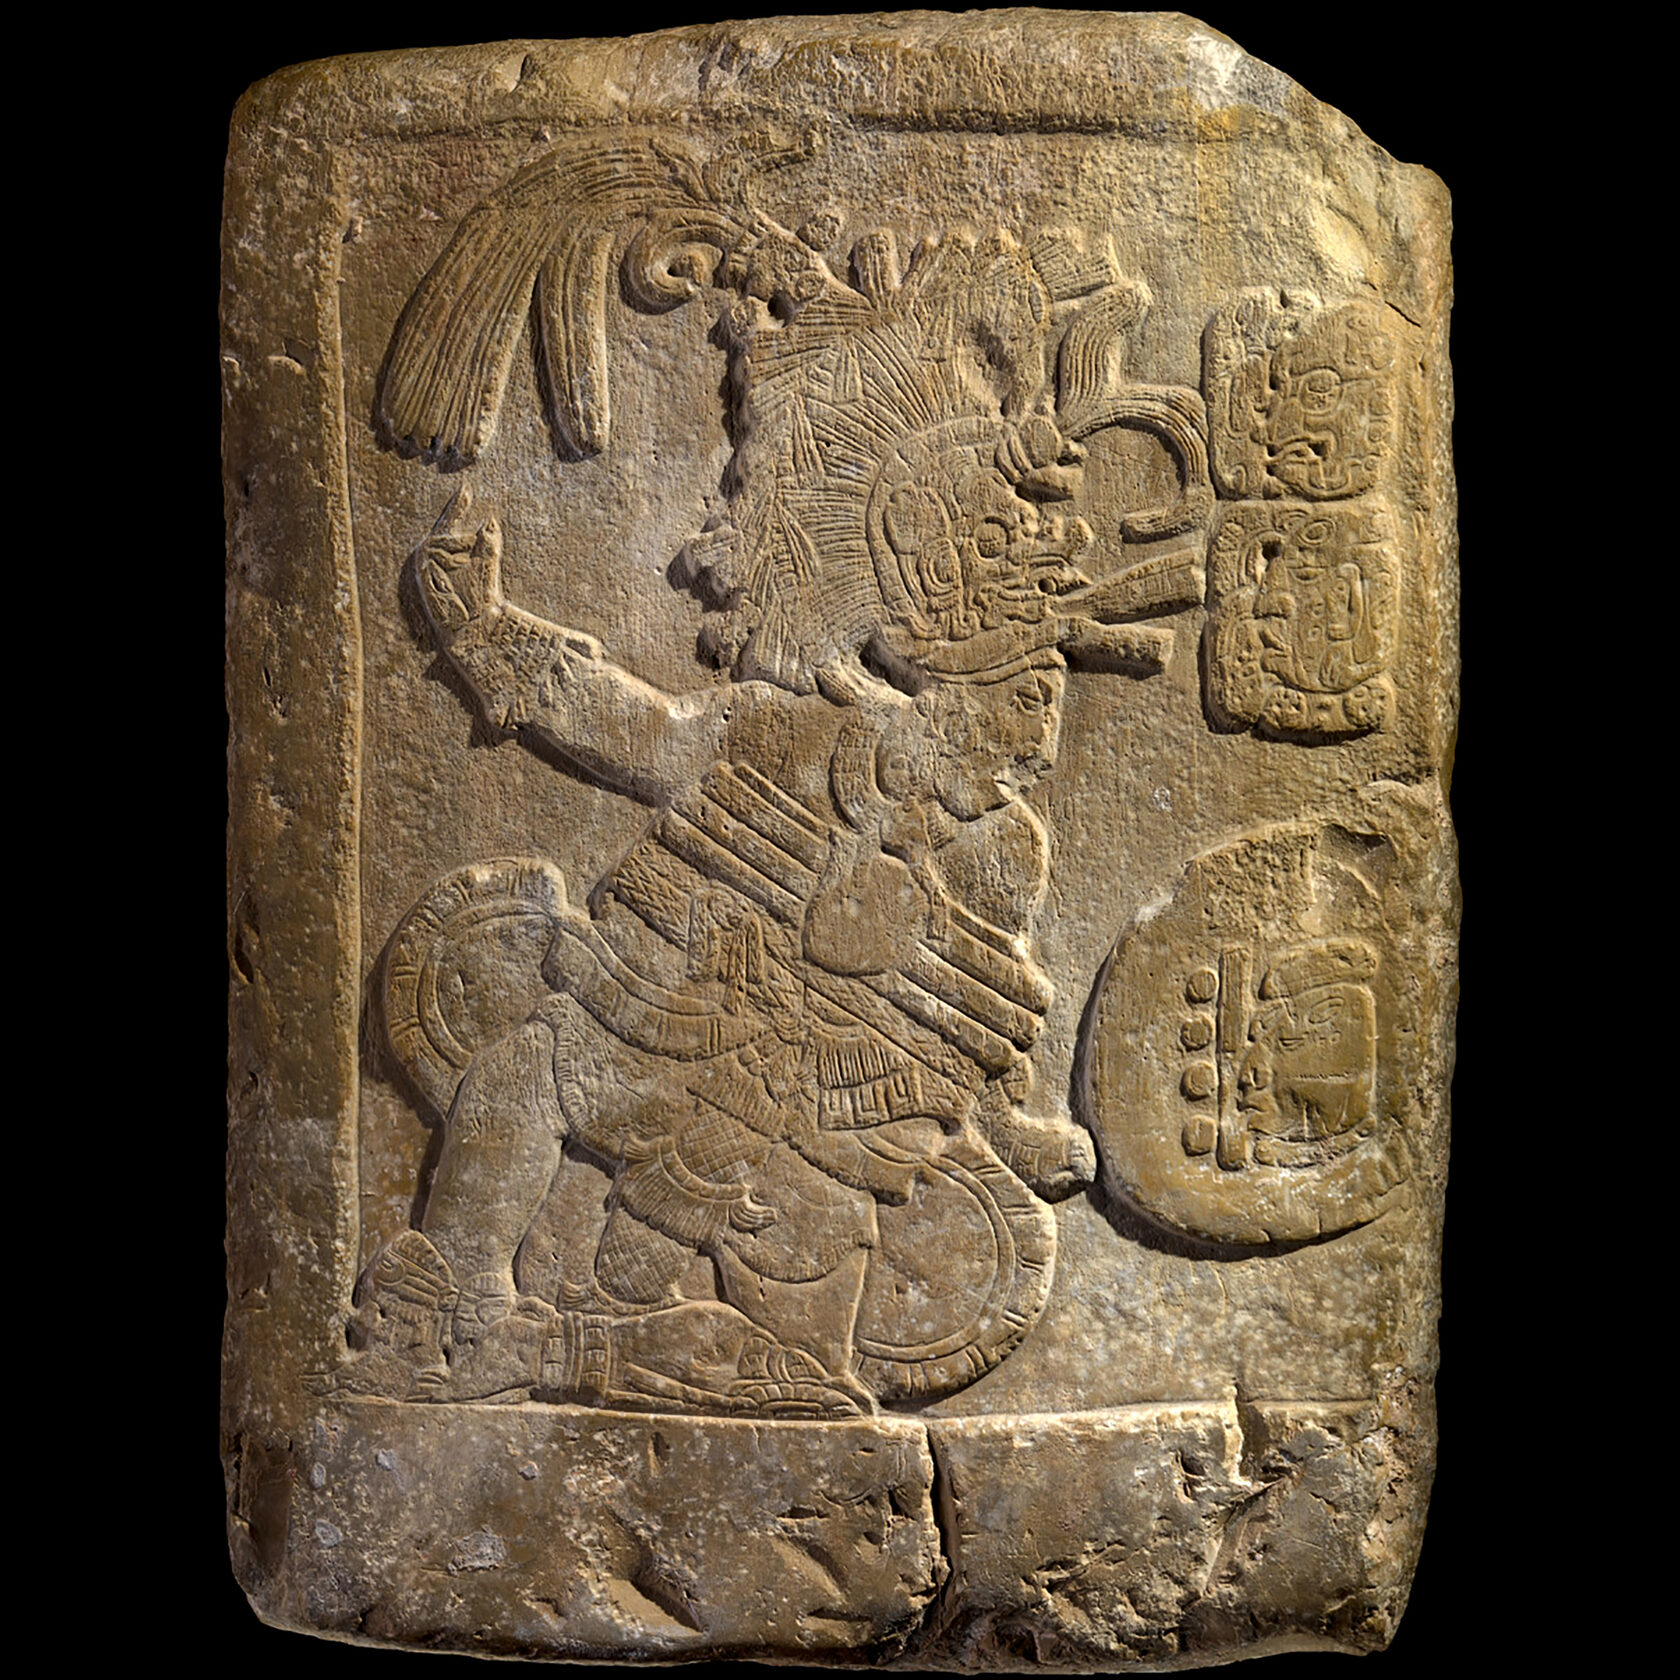 Барельеф с изображением игры в мяч. Майя, 600-750 гг. н.э. Коллекция The National Museum of the American Indian, New York.